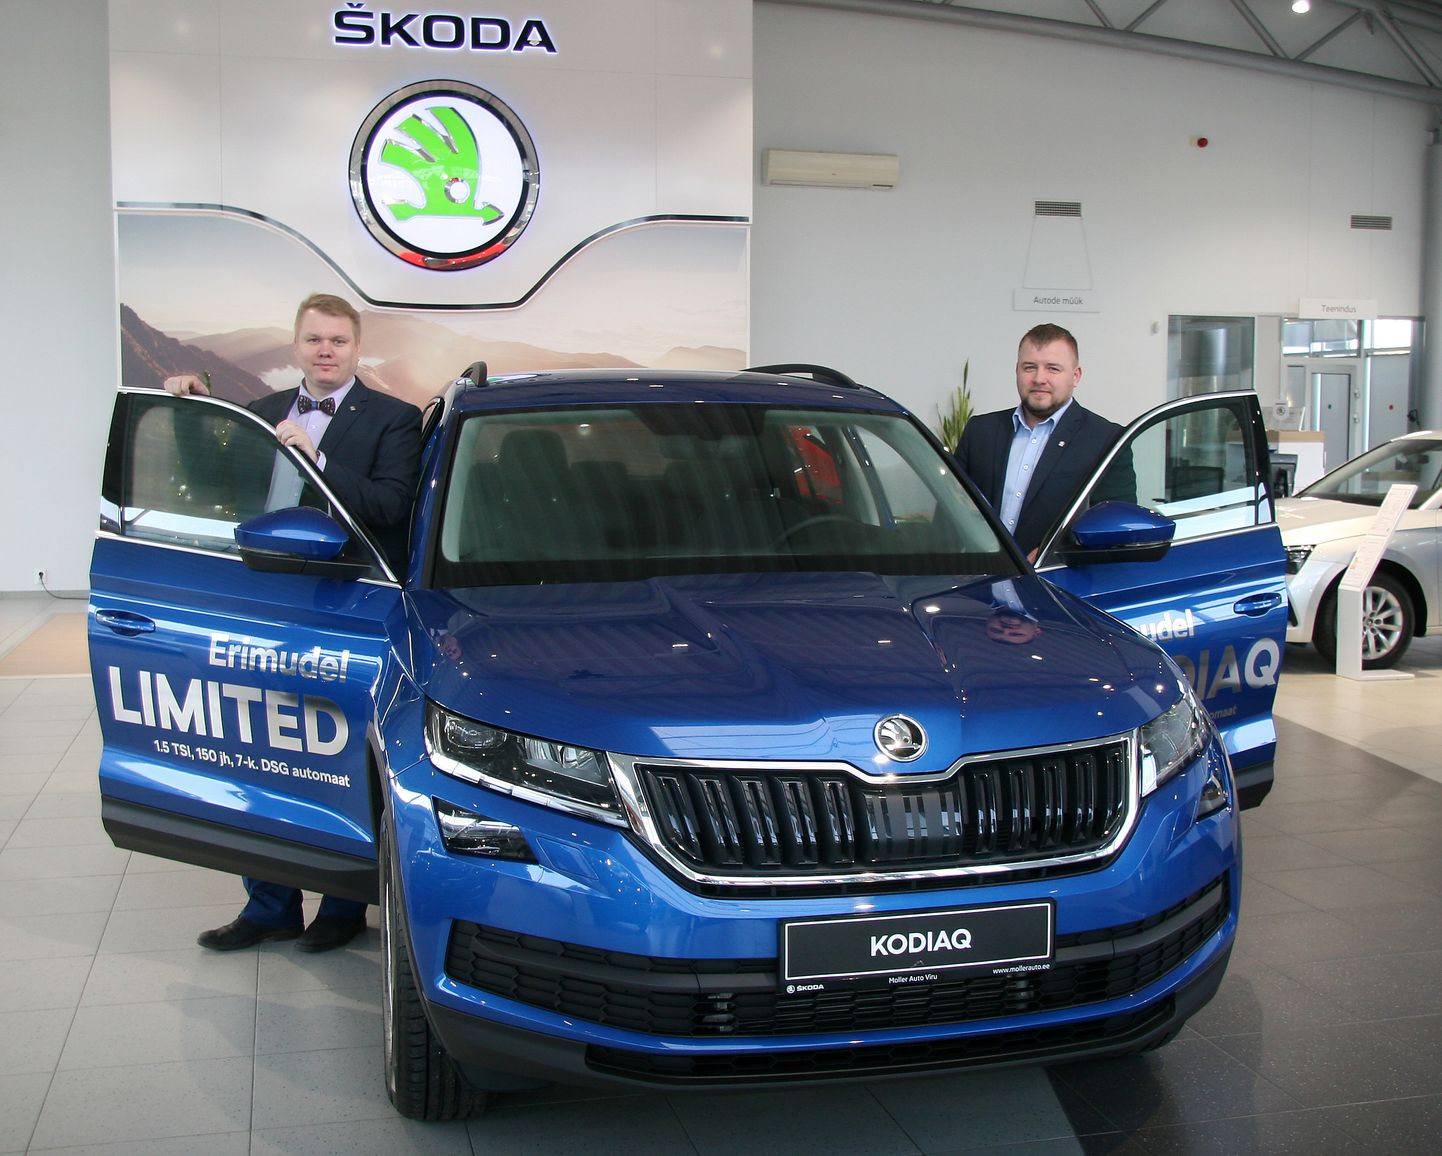 Продажи "Škoda" мощно поддержали спецмодели с приемлемой ценой и хорошим оснащением, а также с быстрой поставкой. Эти три фактора, по словам автоторговцев Ульяса Роогера и Лаури Круупа, пришлись по душе покупателям.